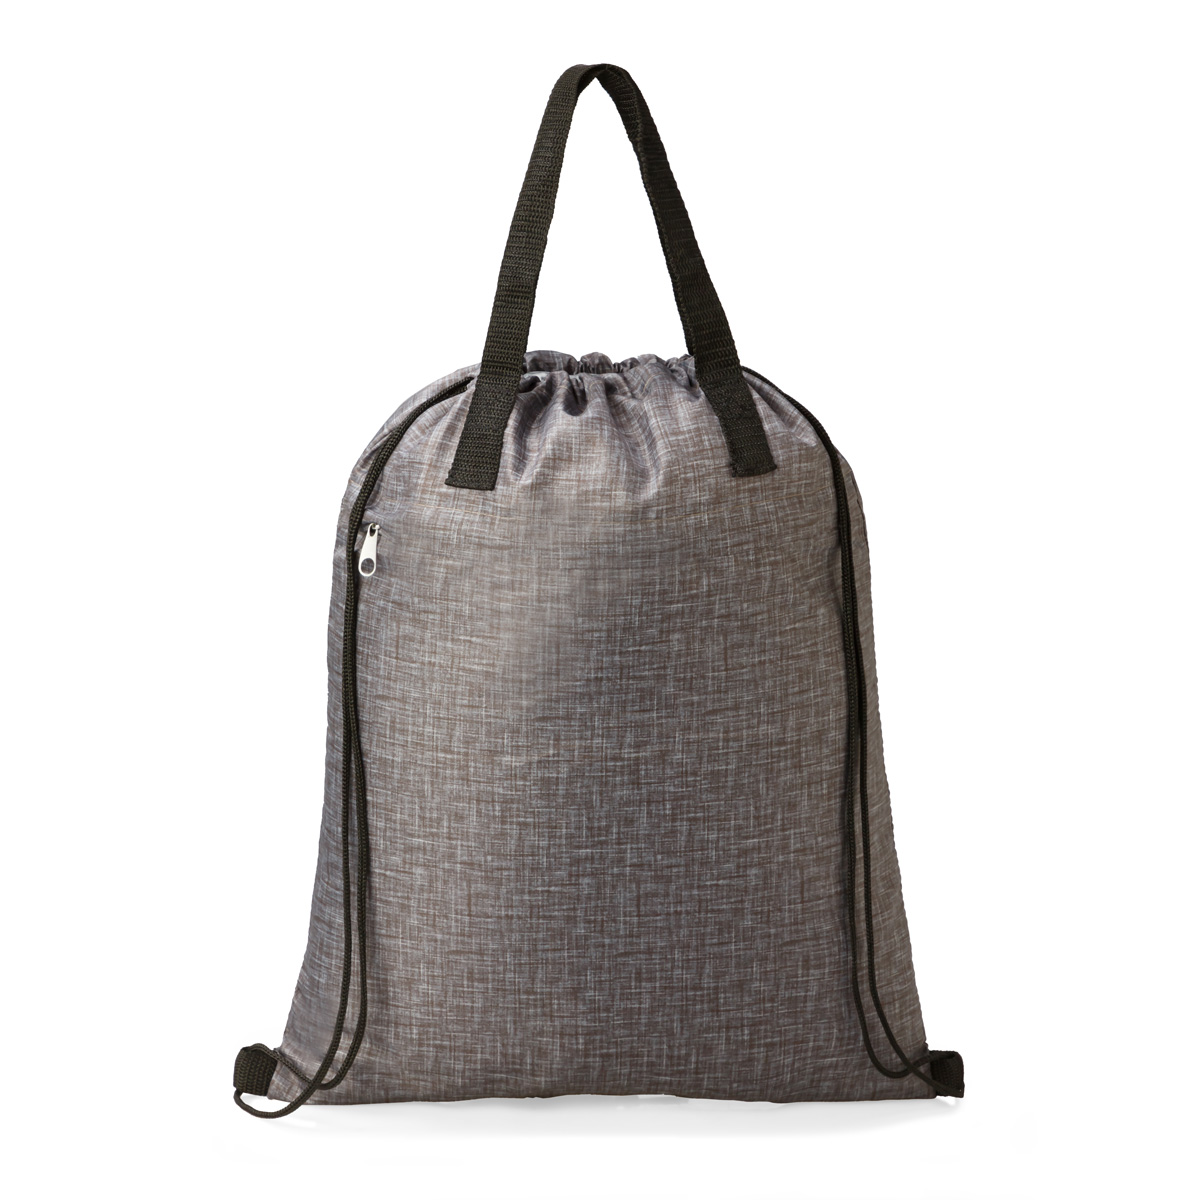 Garten Drawstring Bag Product Image